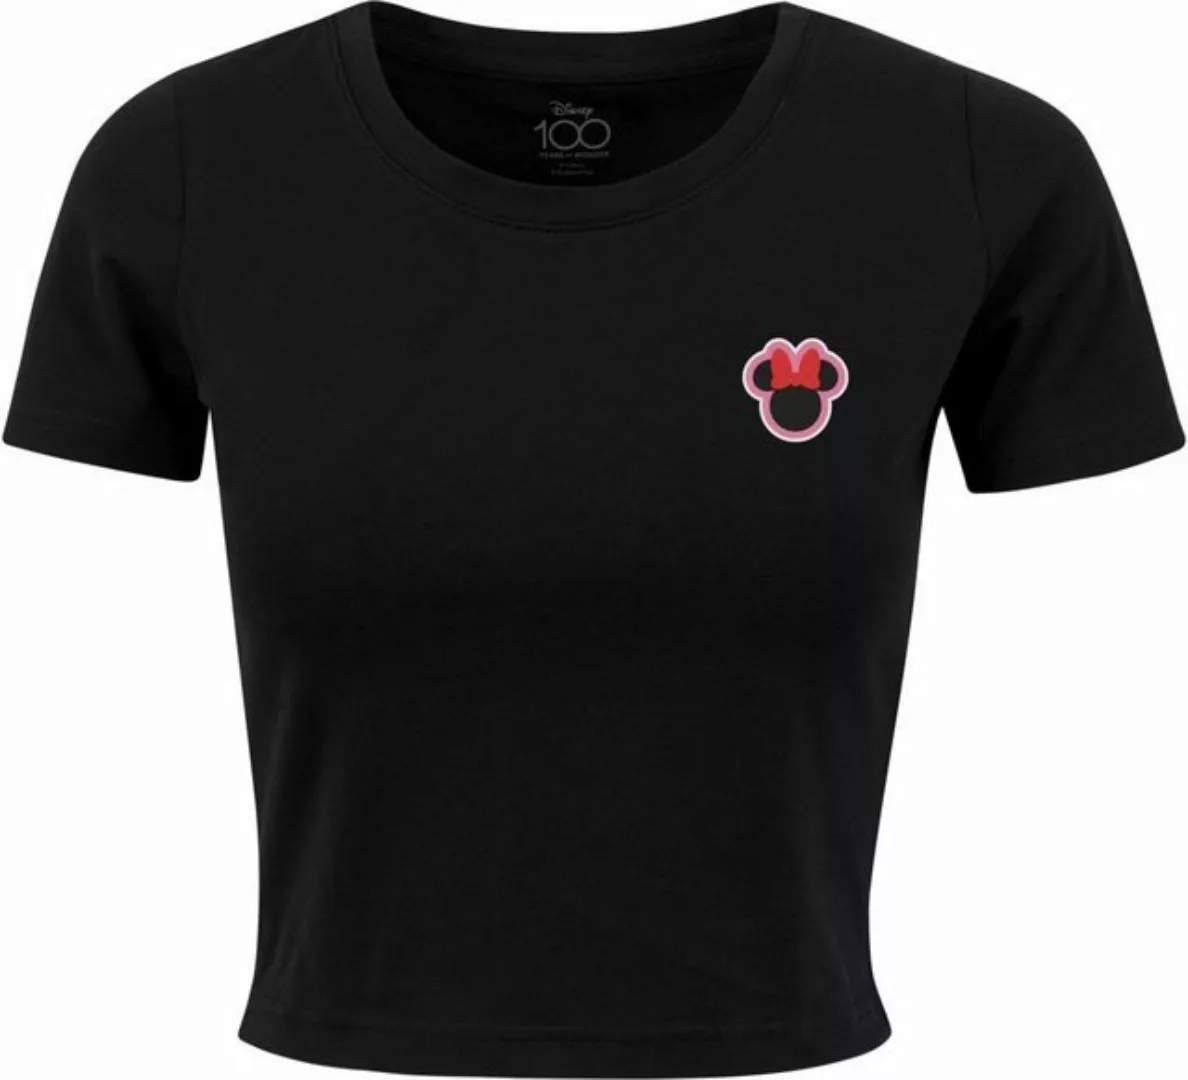 Merchcode T-Shirt Ladies Disney 100 Minnie Badge Tee günstig online kaufen